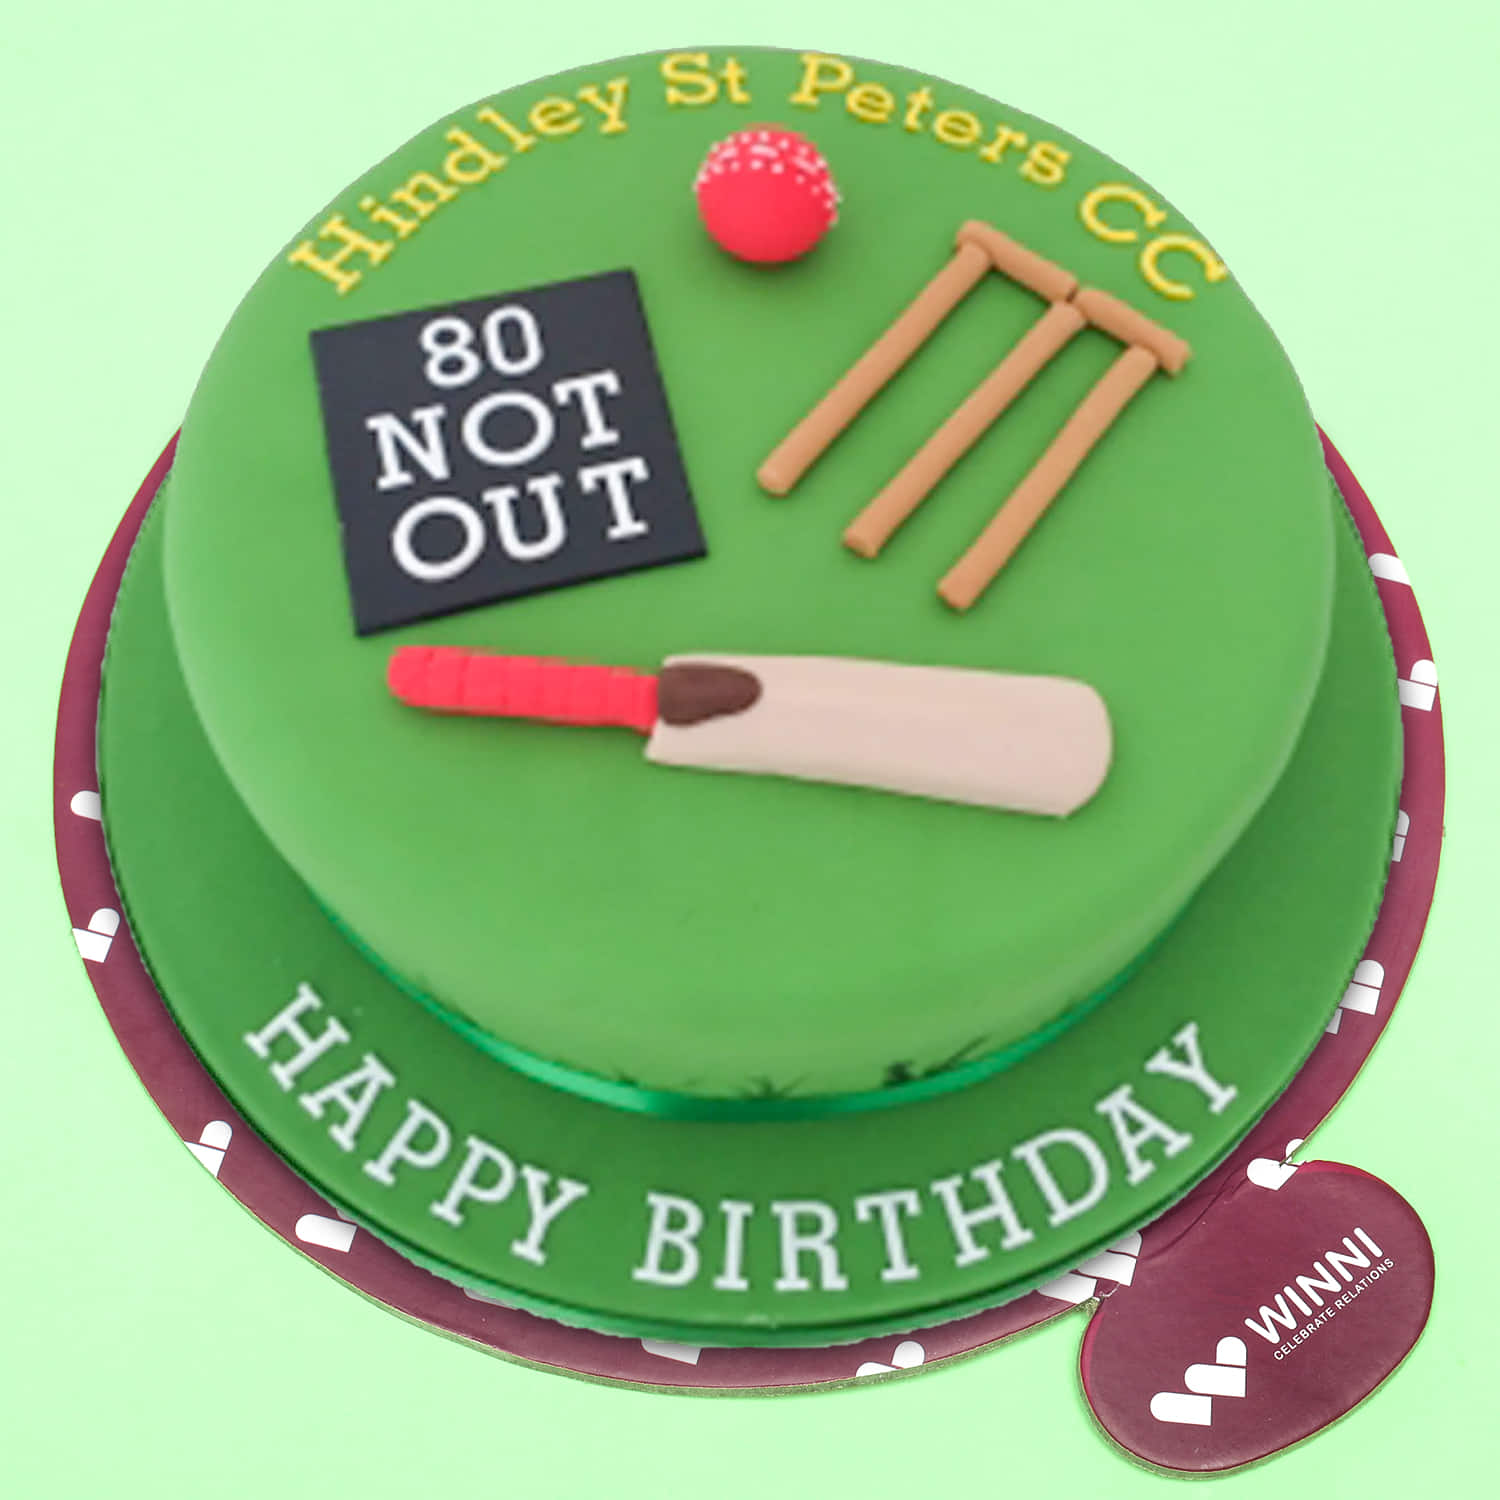 Green Ground Cricket Cake | Fondant Cricket Cake Decoration - YouTube